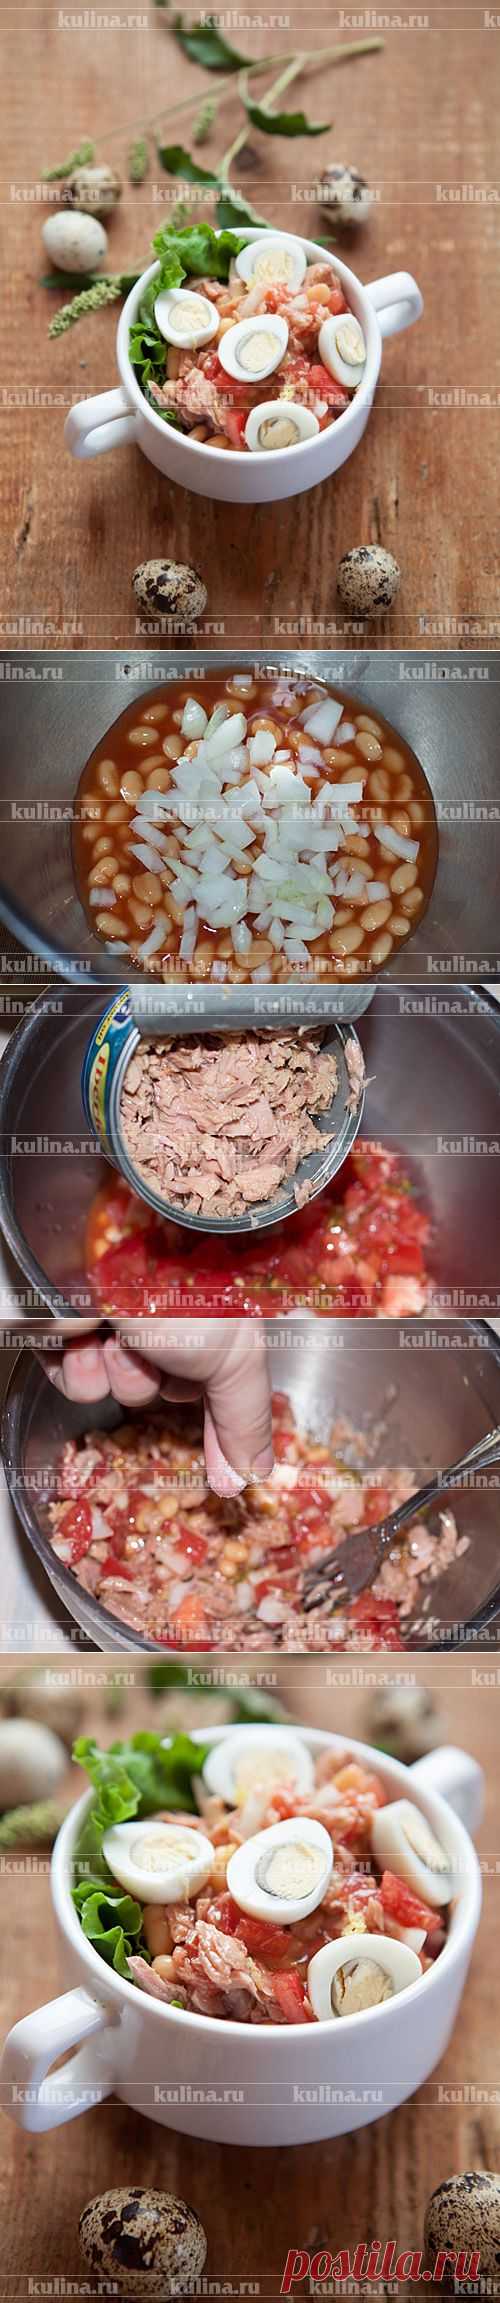 Салат с тунцом и фасолью – рецепт приготовления с фото от Kulina.Ru